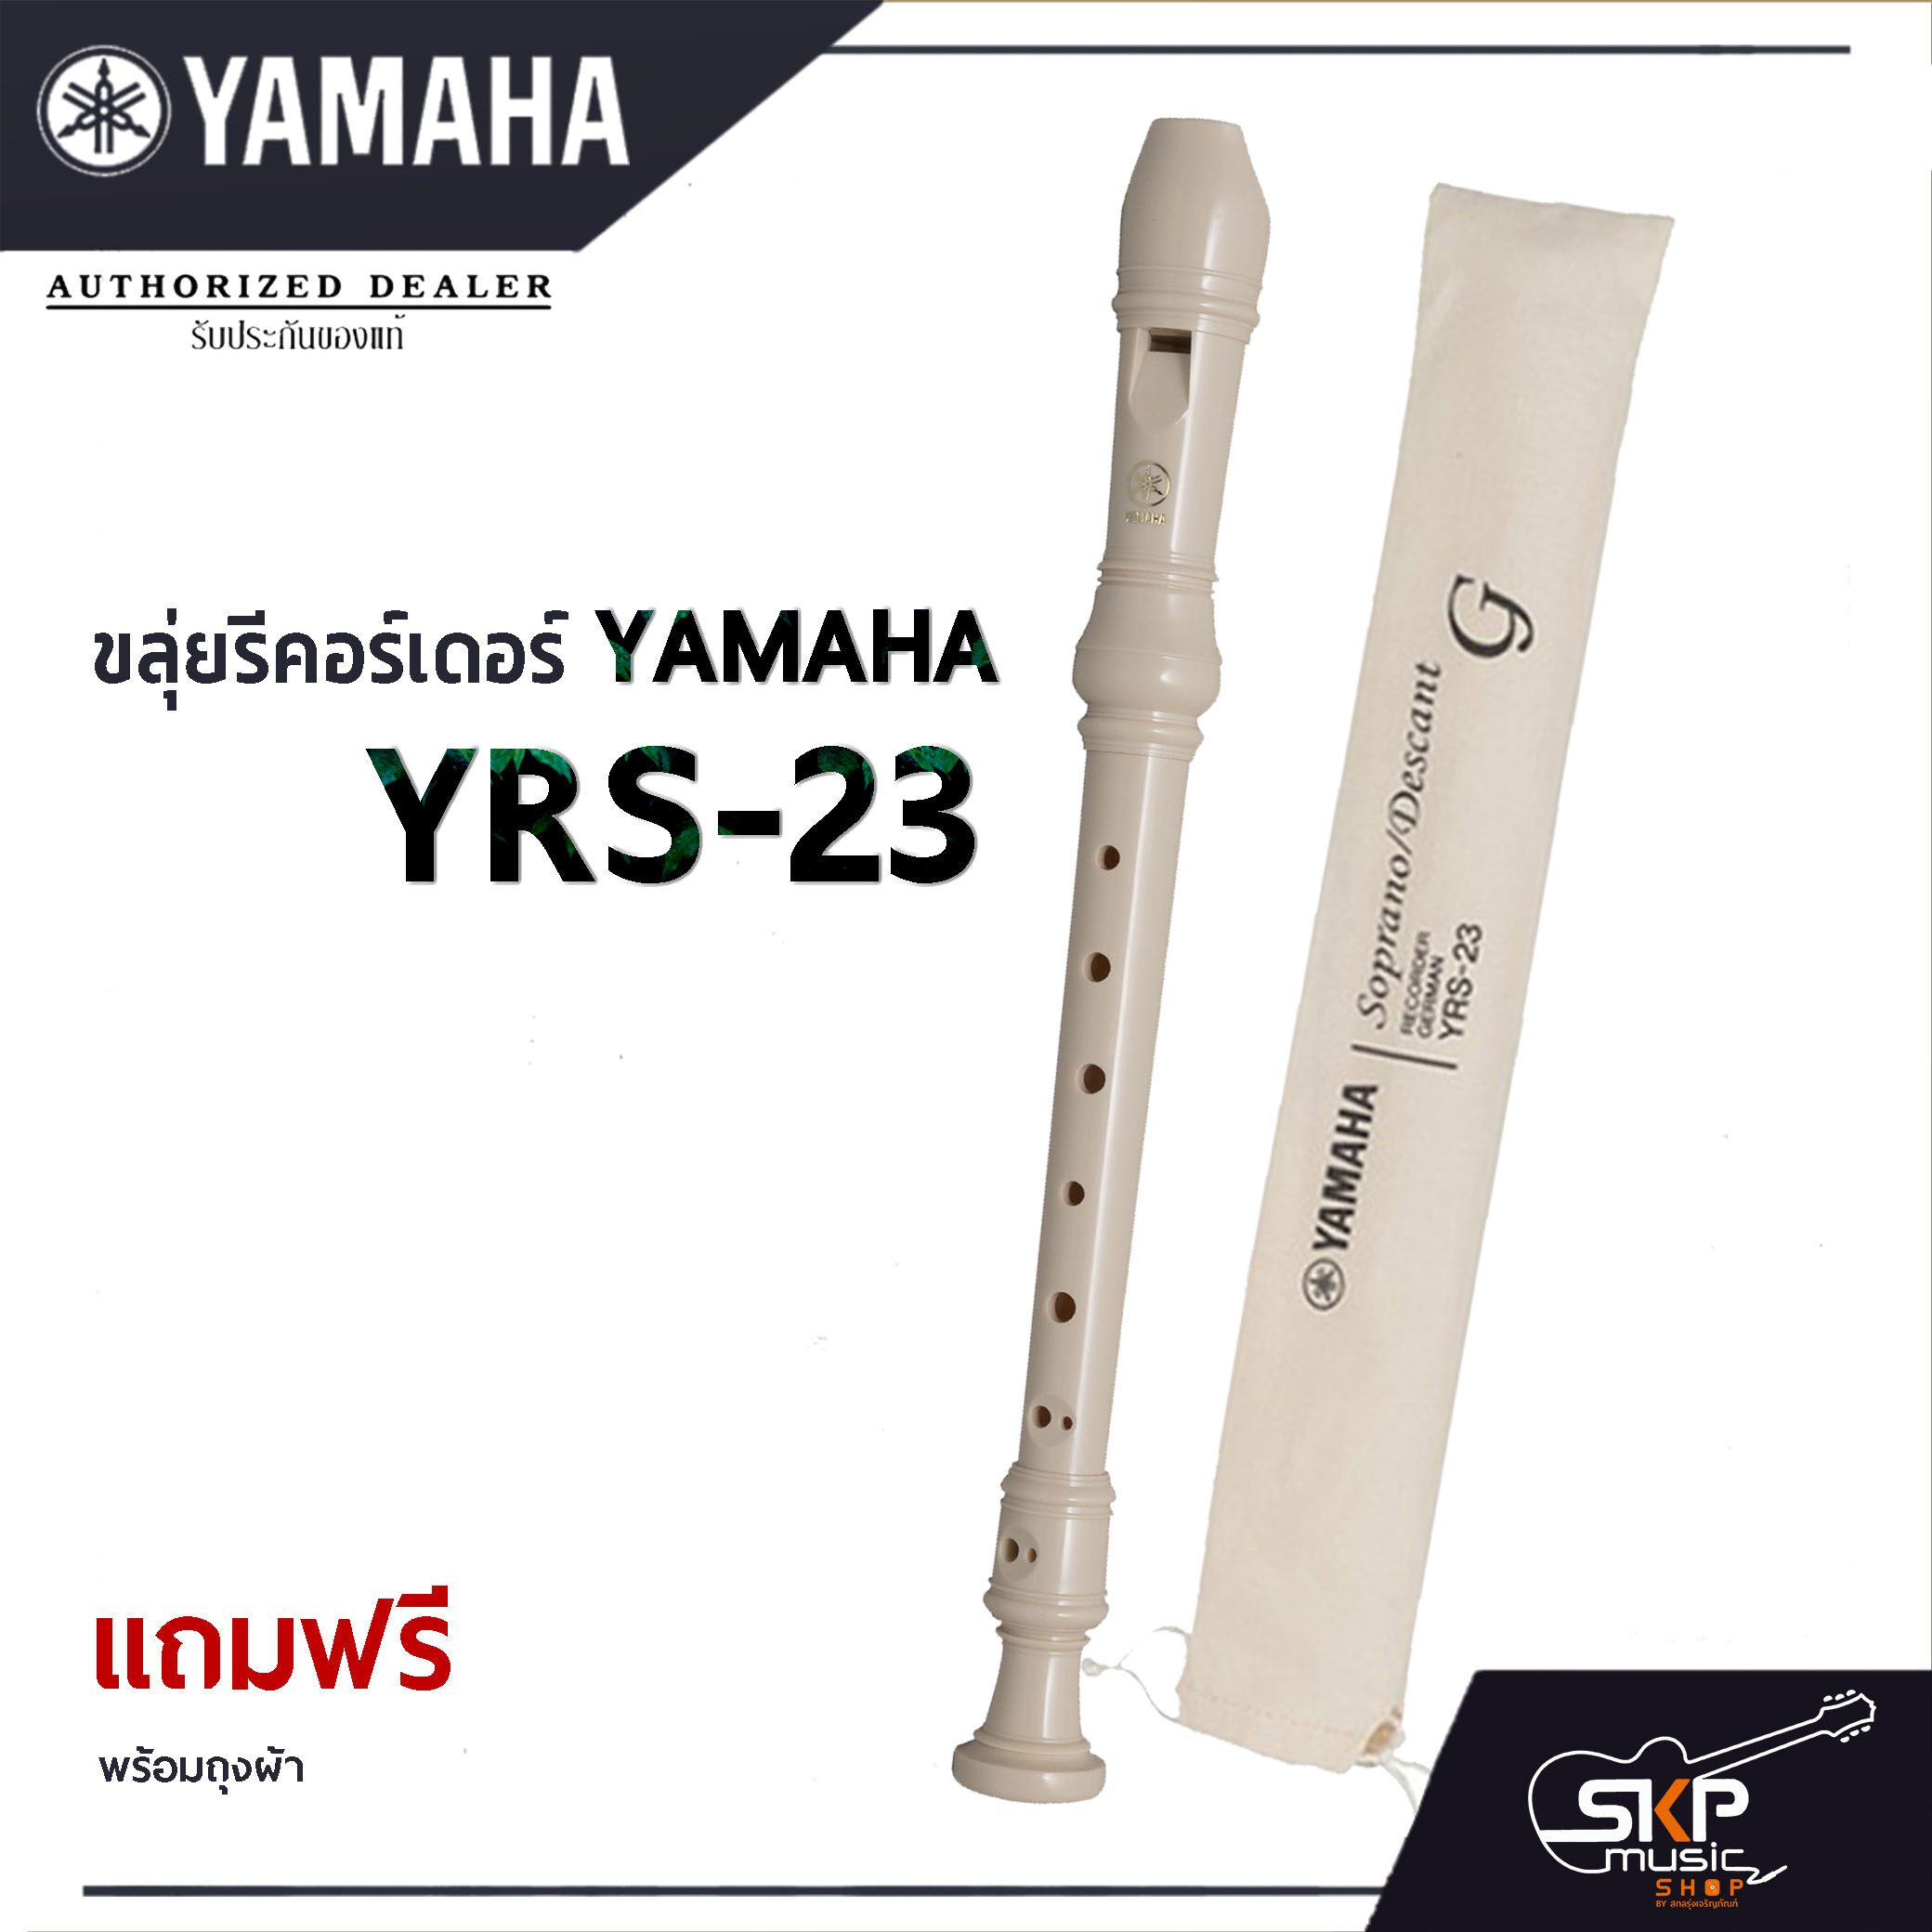 Yamaha ขลุ่ยรีคอร์เดอร์ รุ่น YRS-23  พร้อมส่ง!! แถมถุงผ้าอย่างดีใส่เครื่อง